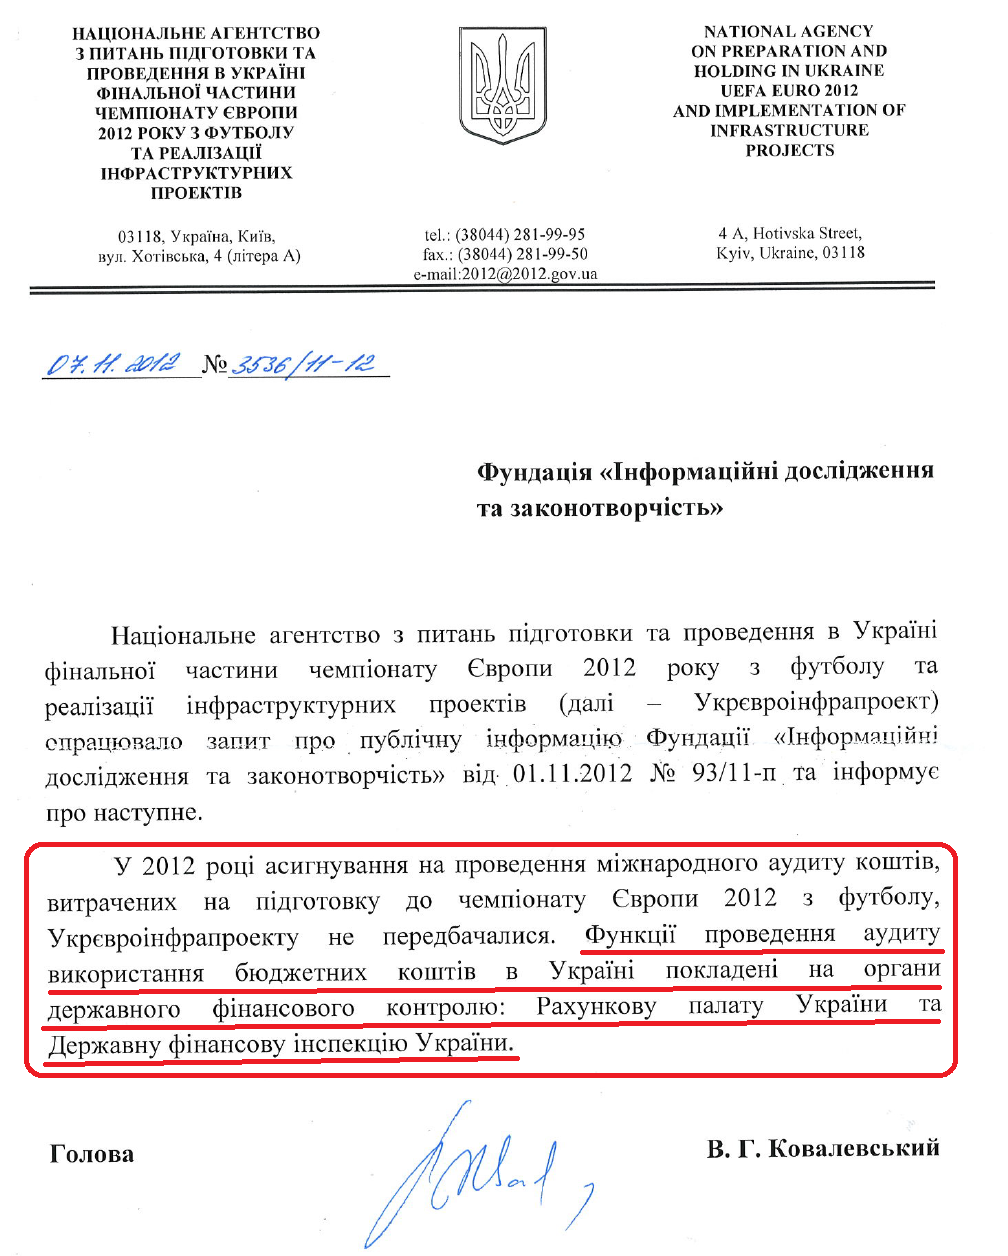 Лист Голови Укрєвроінфрапроекту В.В.Ковалевського від 7 листопада 2012 року